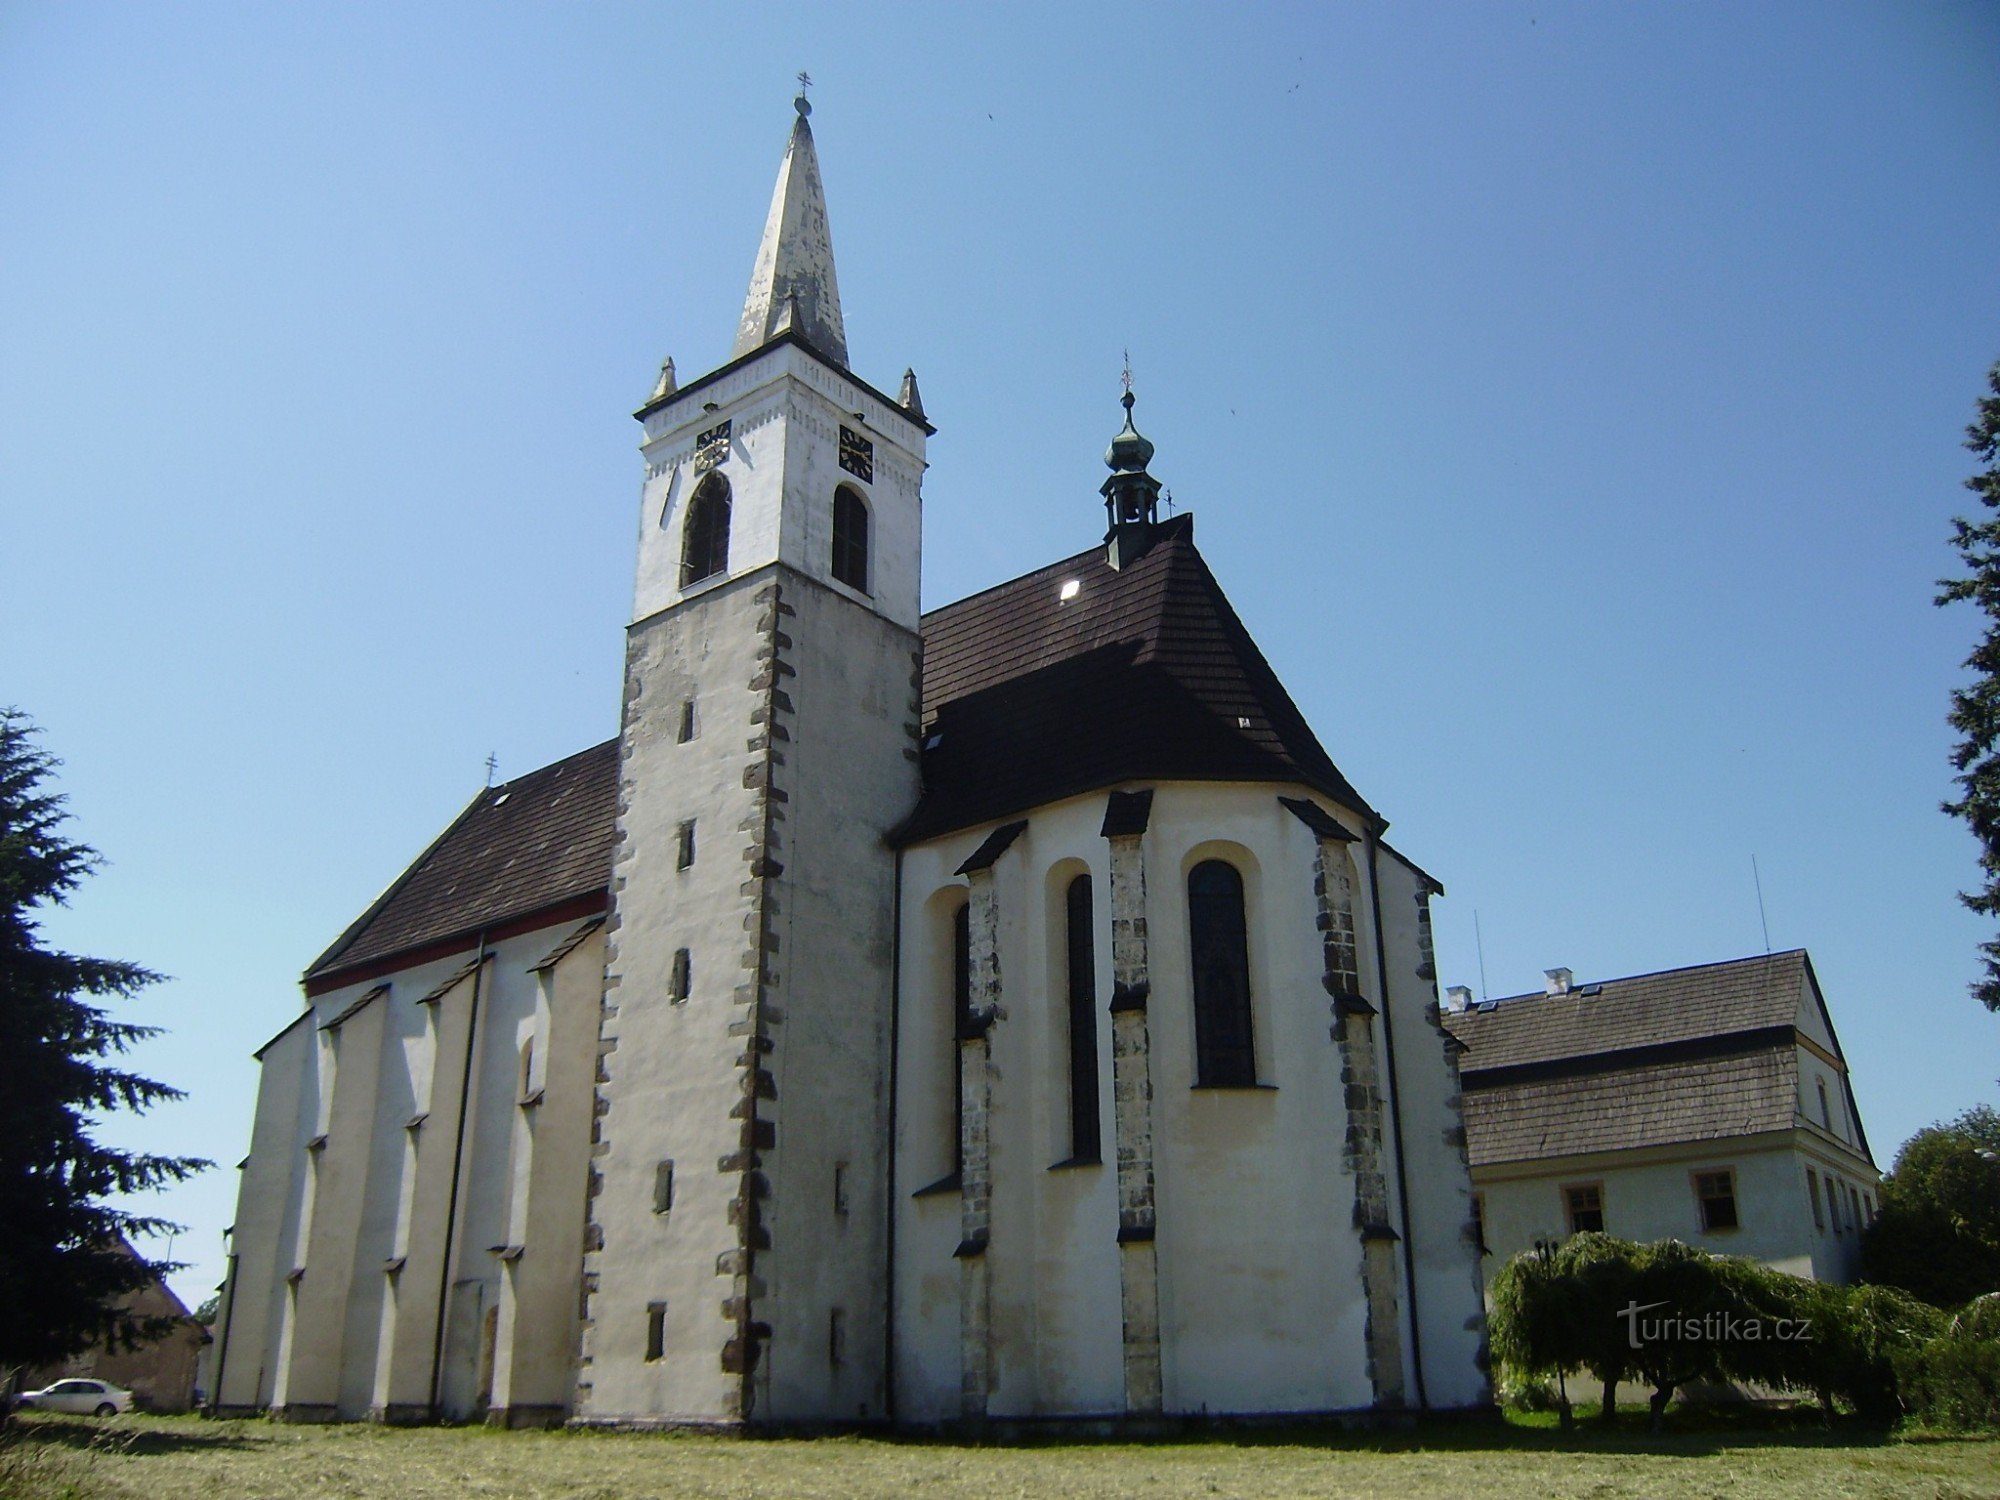 Miličín - Biserica Nașterea P. Maria